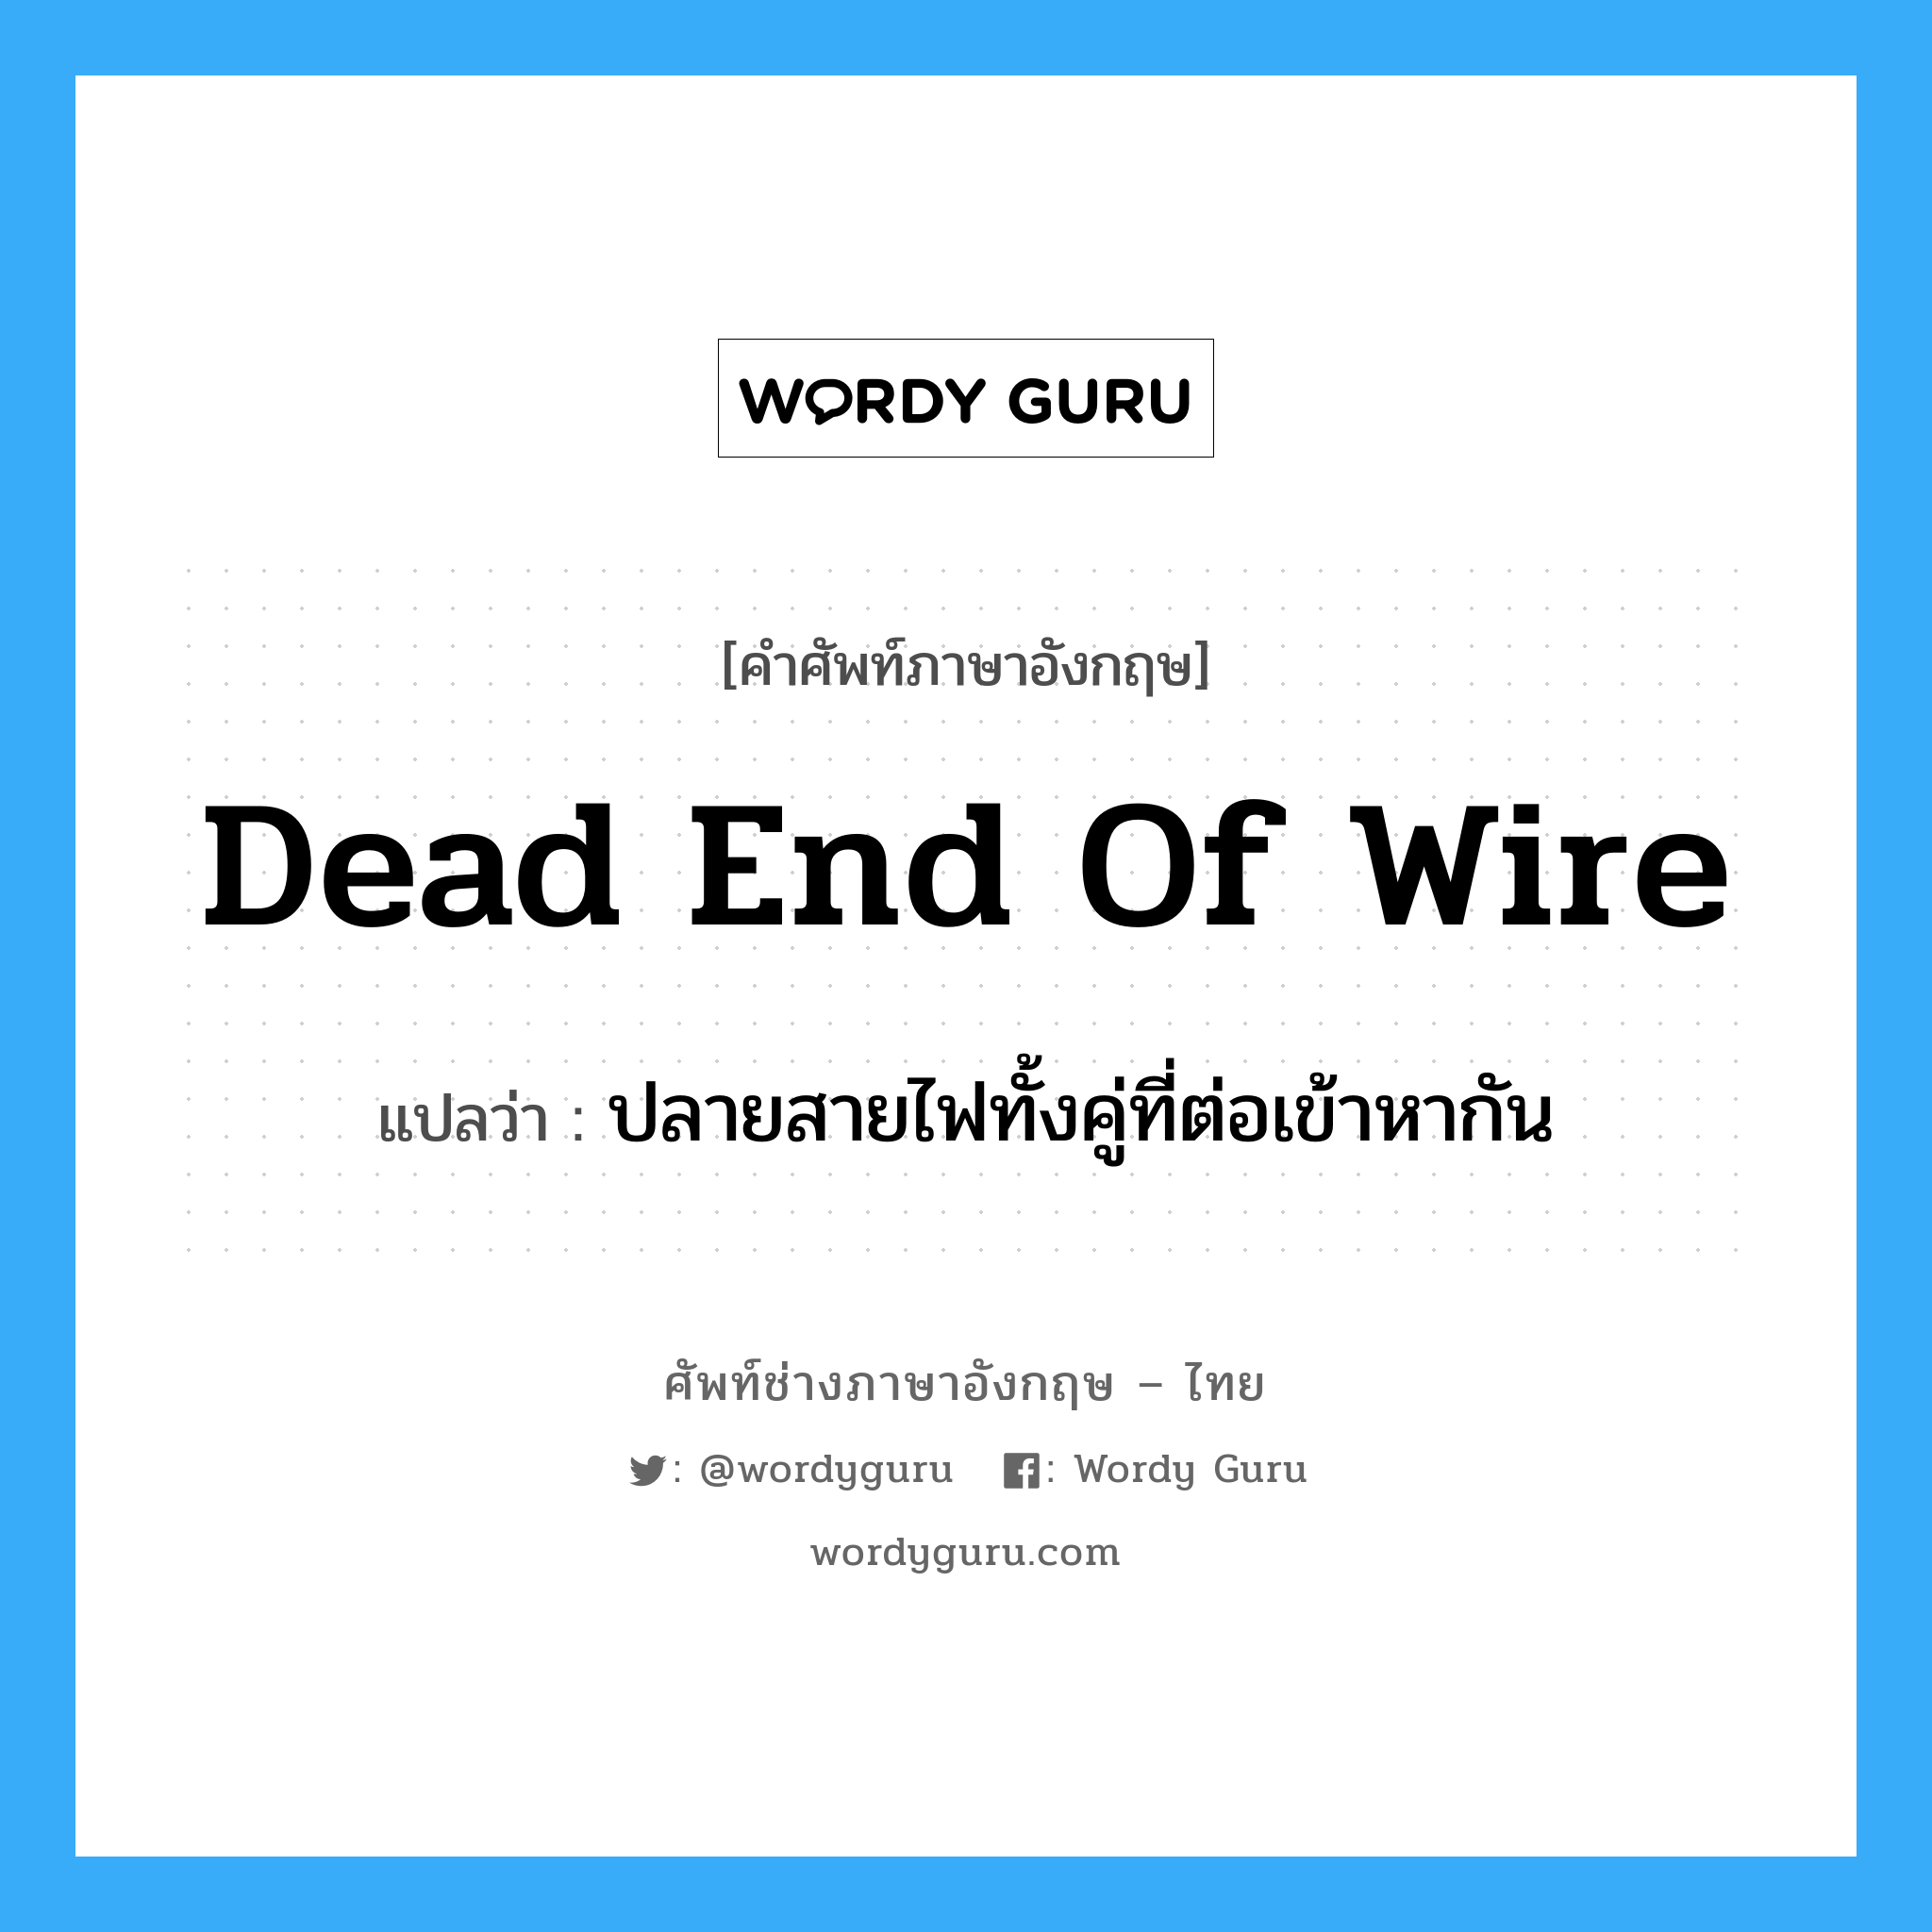 dead end of wire แปลว่า?, คำศัพท์ช่างภาษาอังกฤษ - ไทย dead end of wire คำศัพท์ภาษาอังกฤษ dead end of wire แปลว่า ปลายสายไฟทั้งคู่ที่ต่อเข้าหากัน